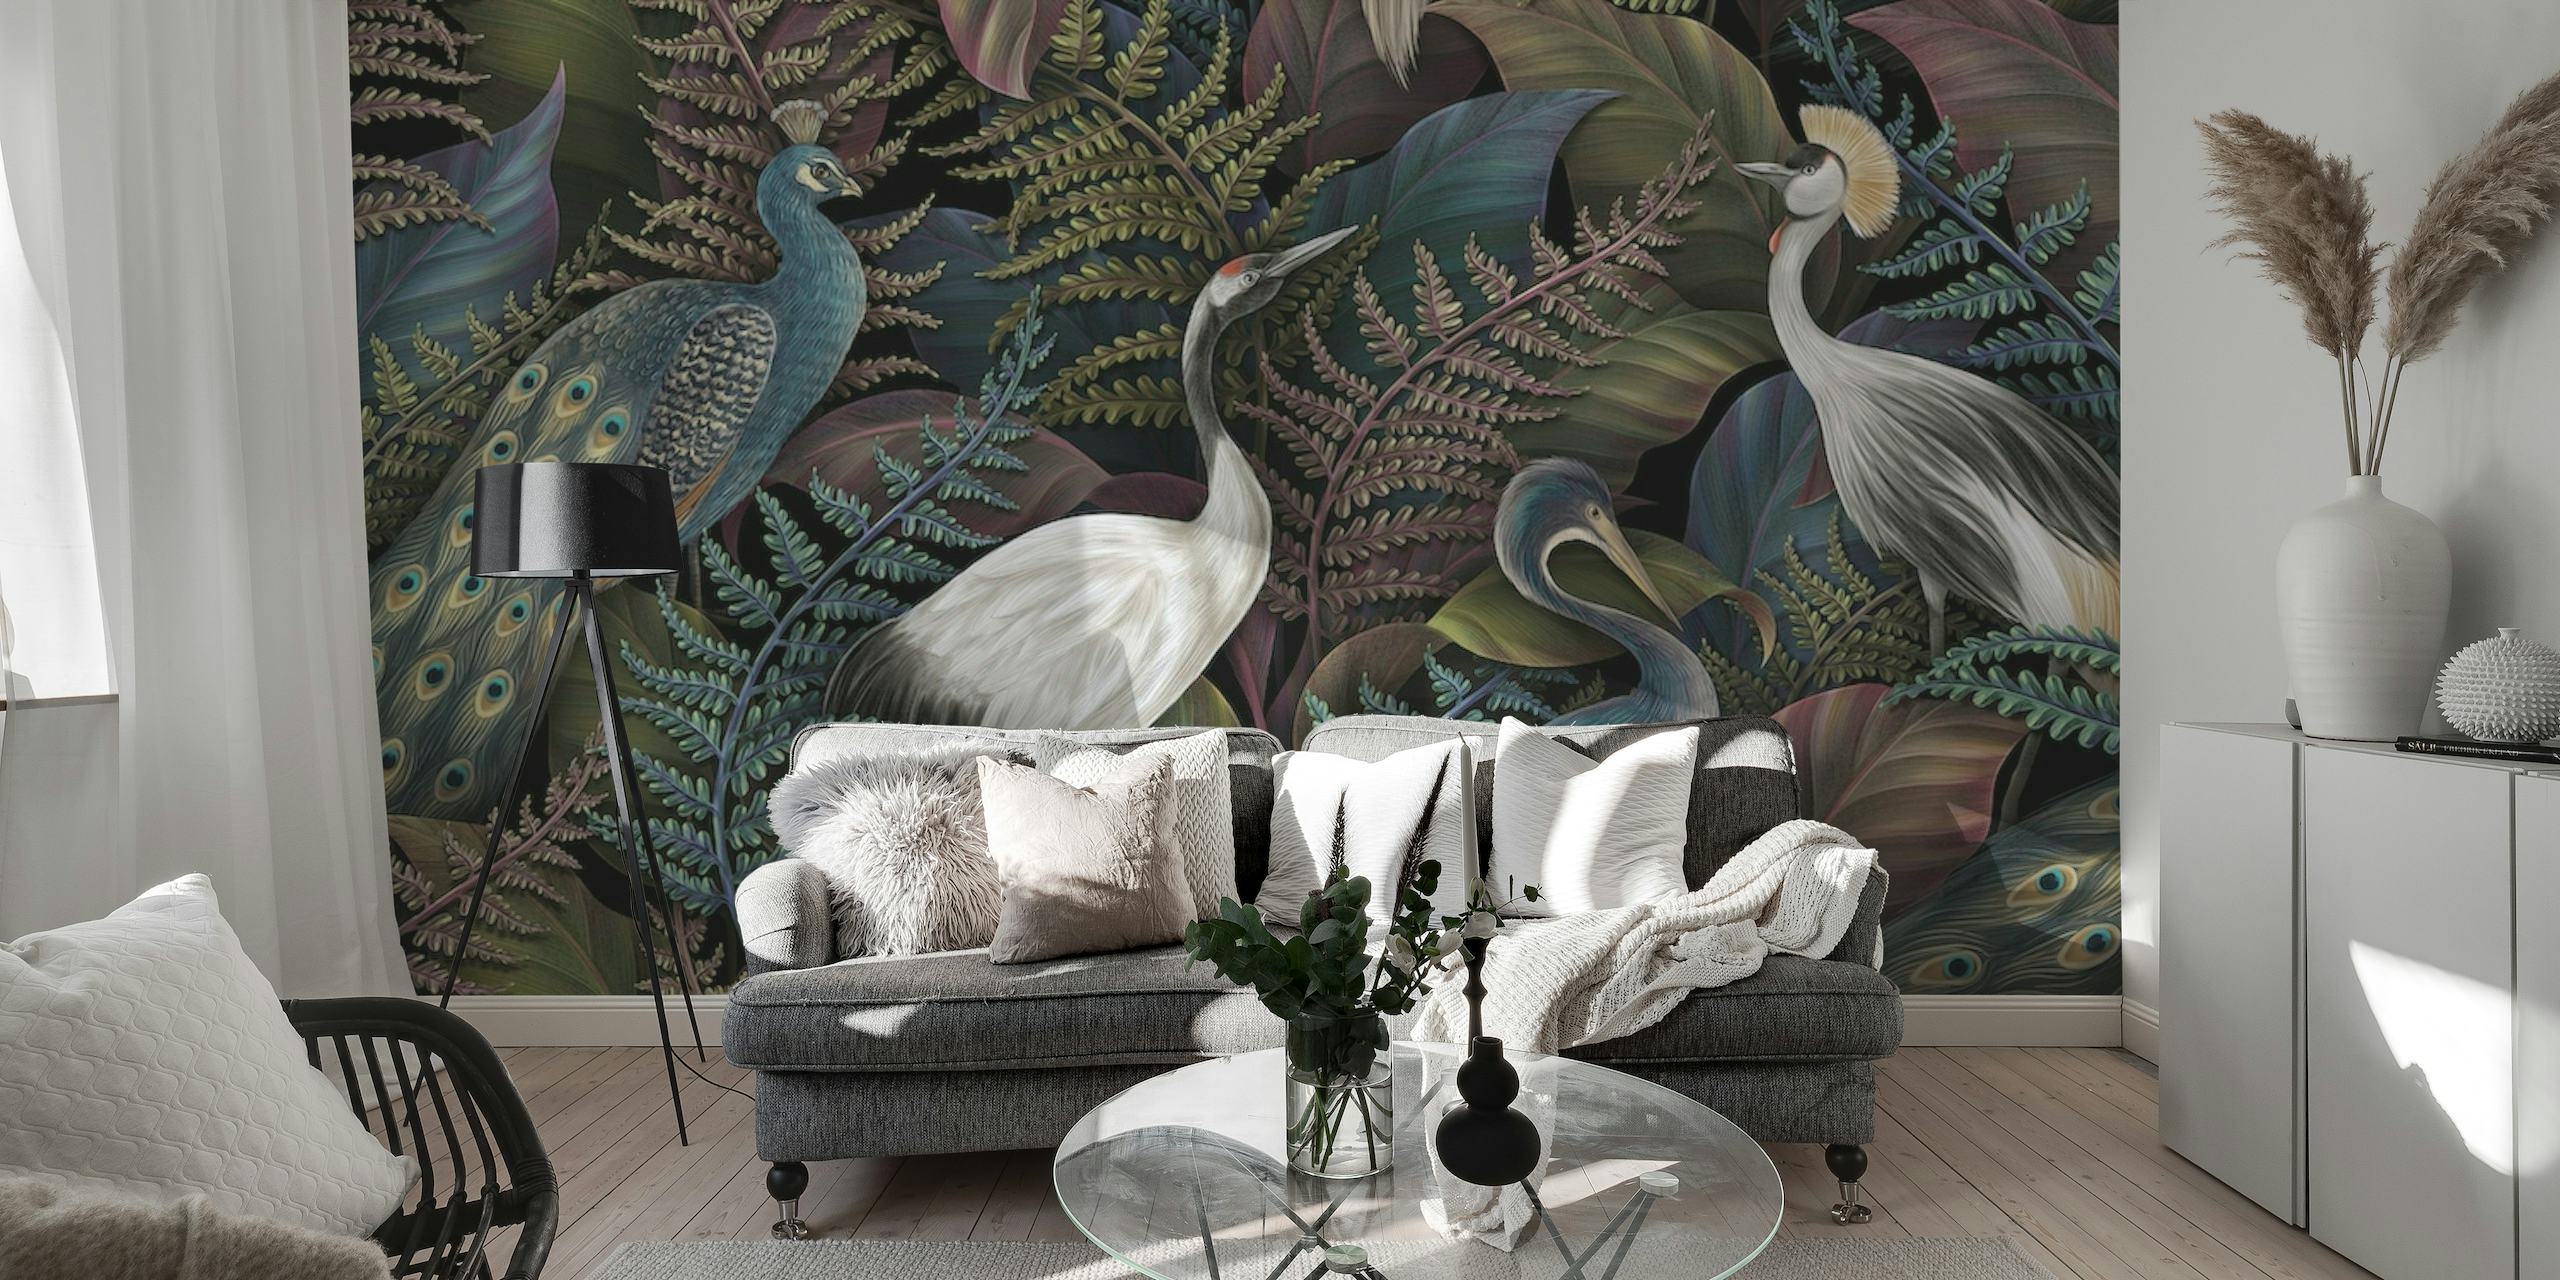 Une fresque murale sophistiquée représentant des oiseaux élégants et un feuillage tropical dans un décor de jungle dense.